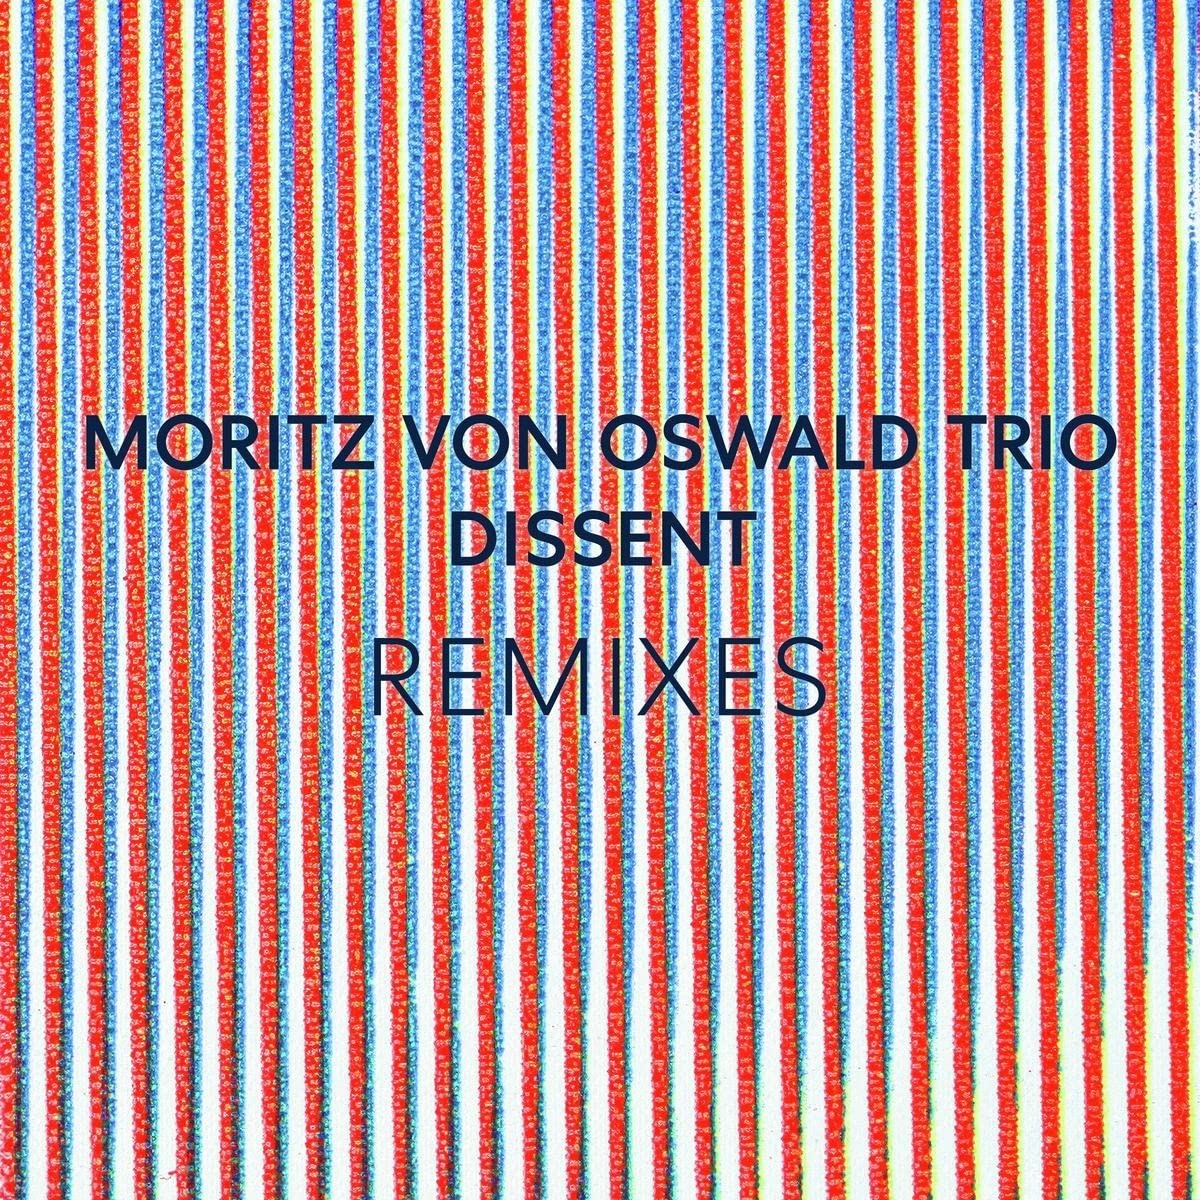 MORITZ VON OSWALD TRIO & HEINRICH KÖBBERLING - DISSENT REMIXES (FEAT. LAUREL HALO), Vinyl